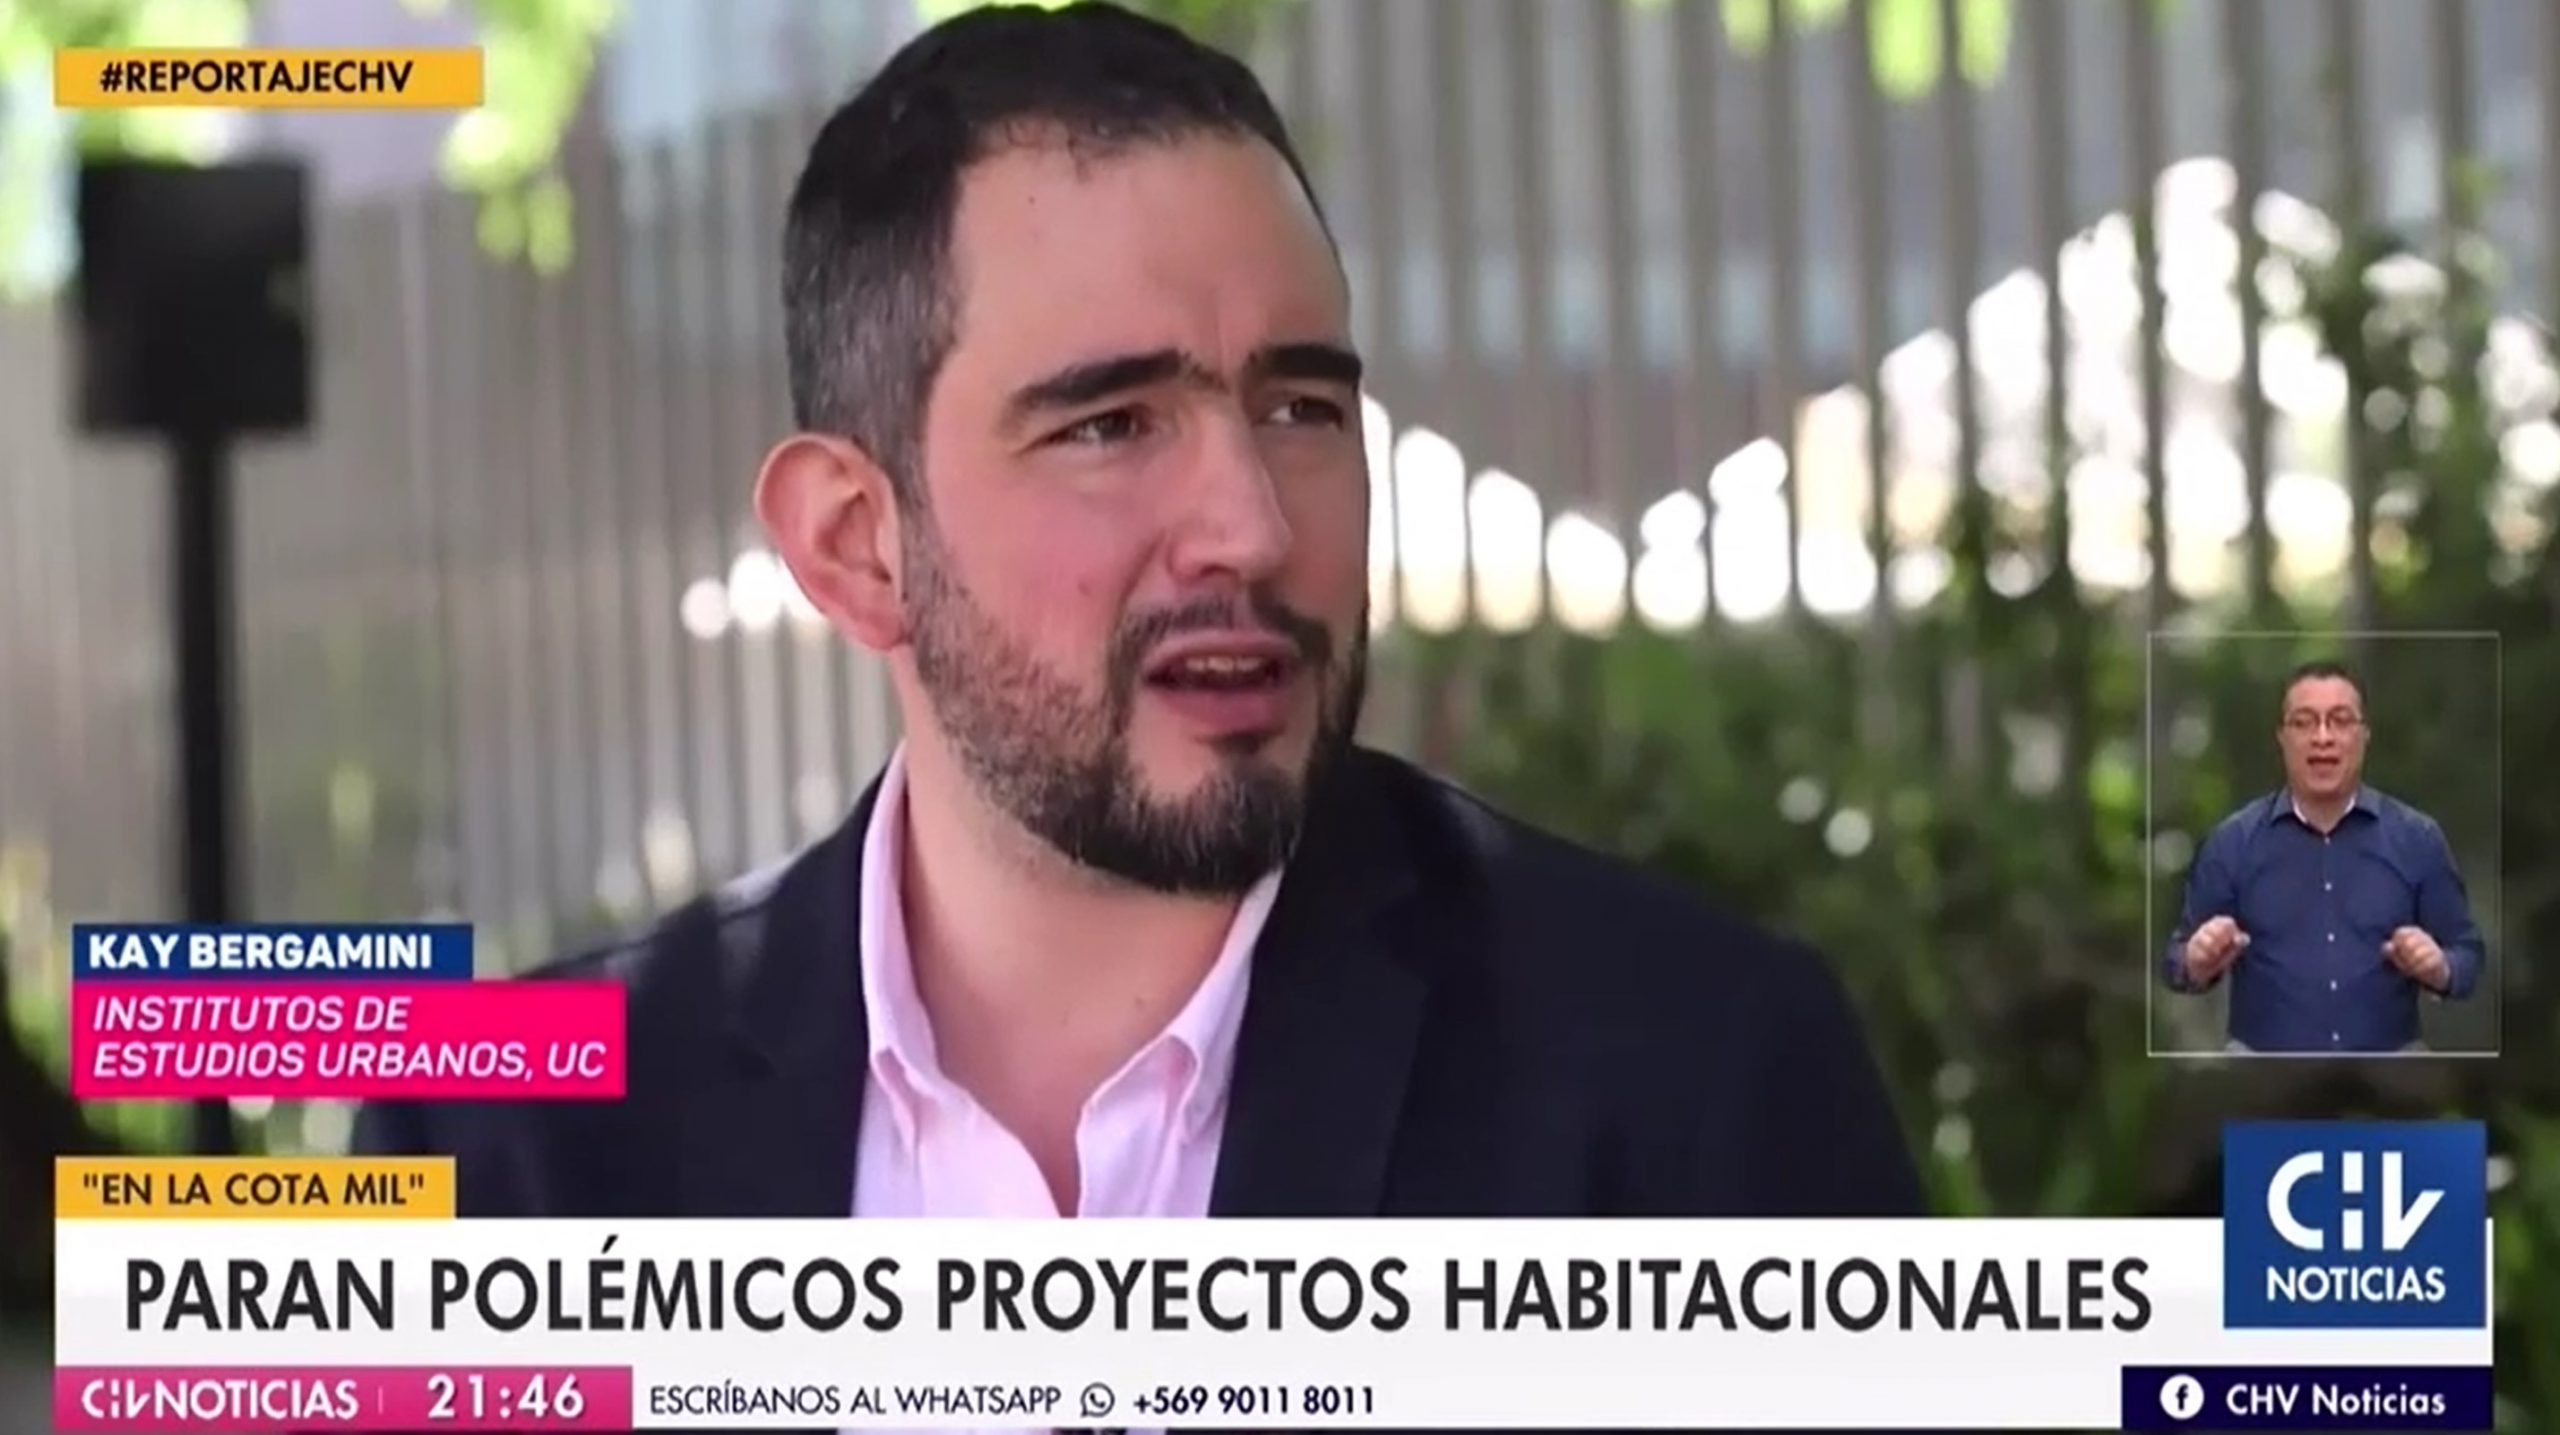 Reportaje Chilevisión/CNN Chile: Paran polémicos proyectos habitacionales en la “cota mil” entre Colina y Lo Barnechea